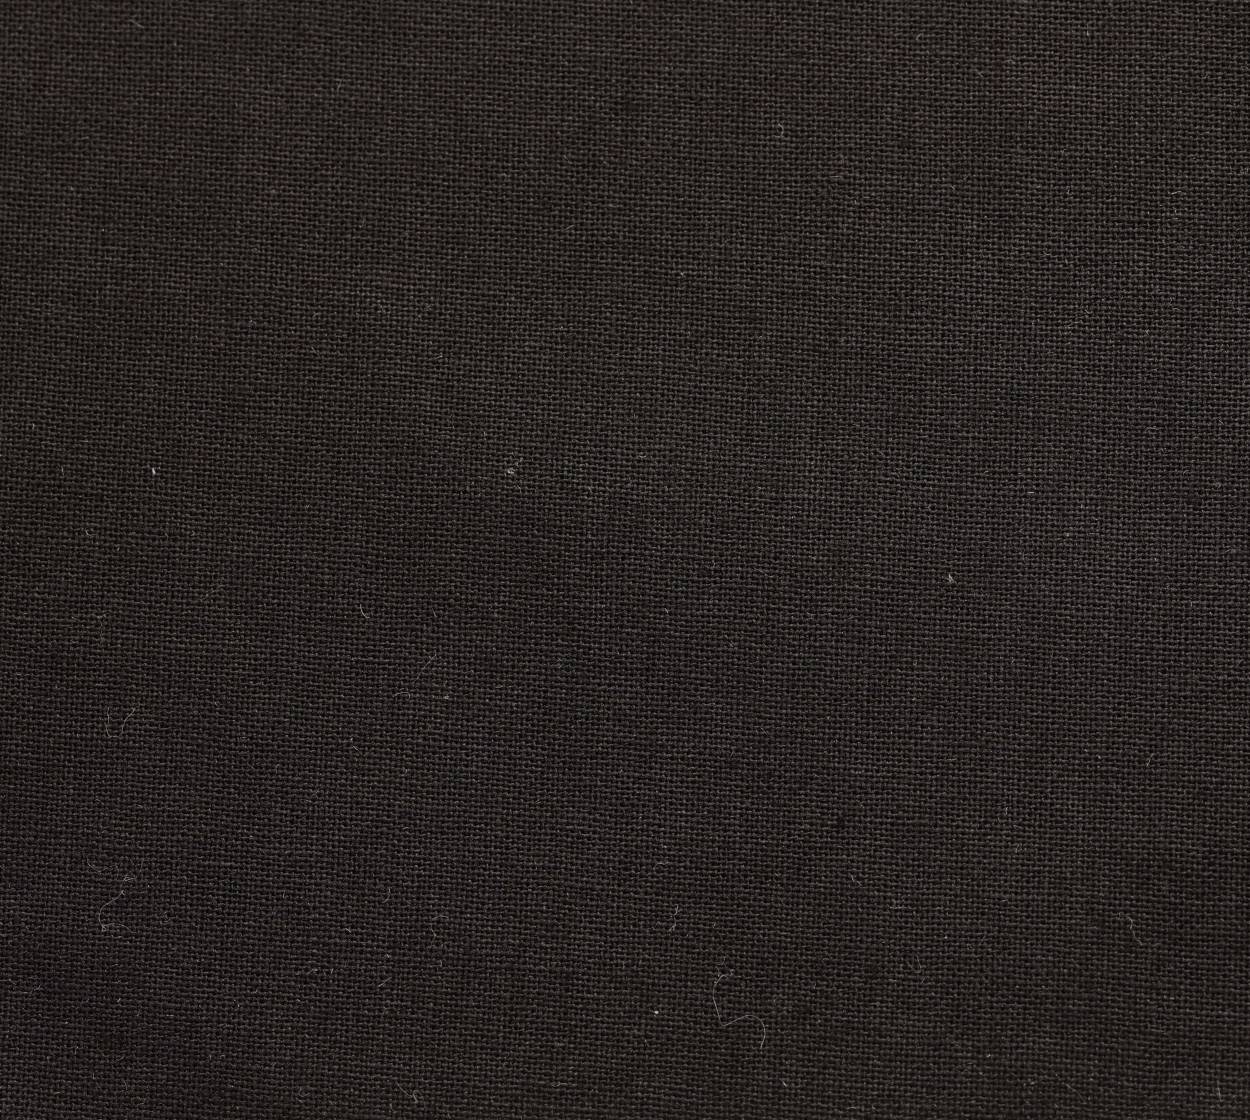 Nessel Baumwolle, schwarz 347, 5,20 m breit, 6N58 im Stamm online Store München